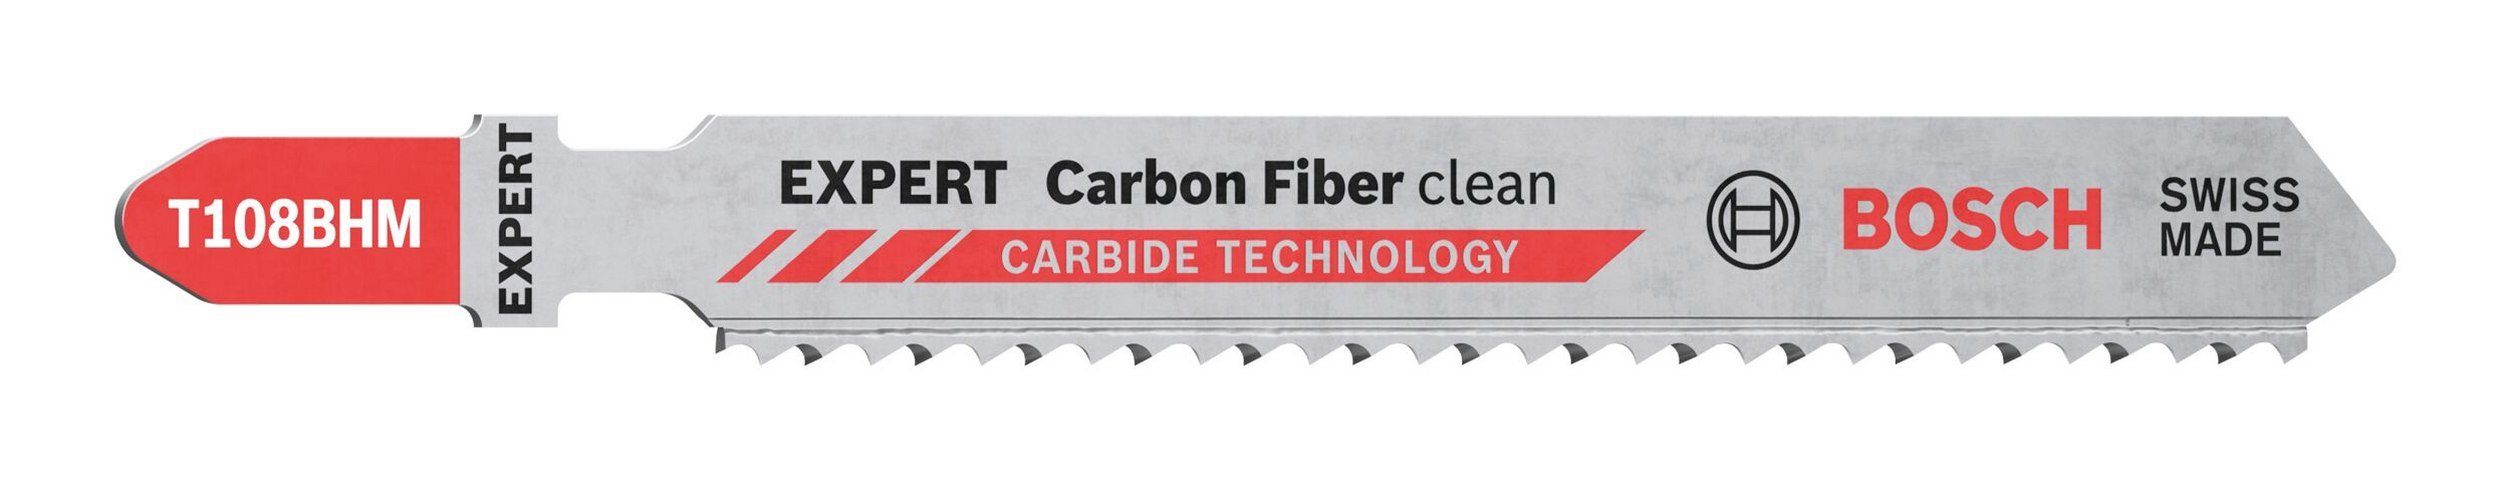 Clean Carbon Fiber Clean VE EXPERT Expert BOSCH À BHM 108 Fiber Stichsägeblatt T (3 Stück), Carbon